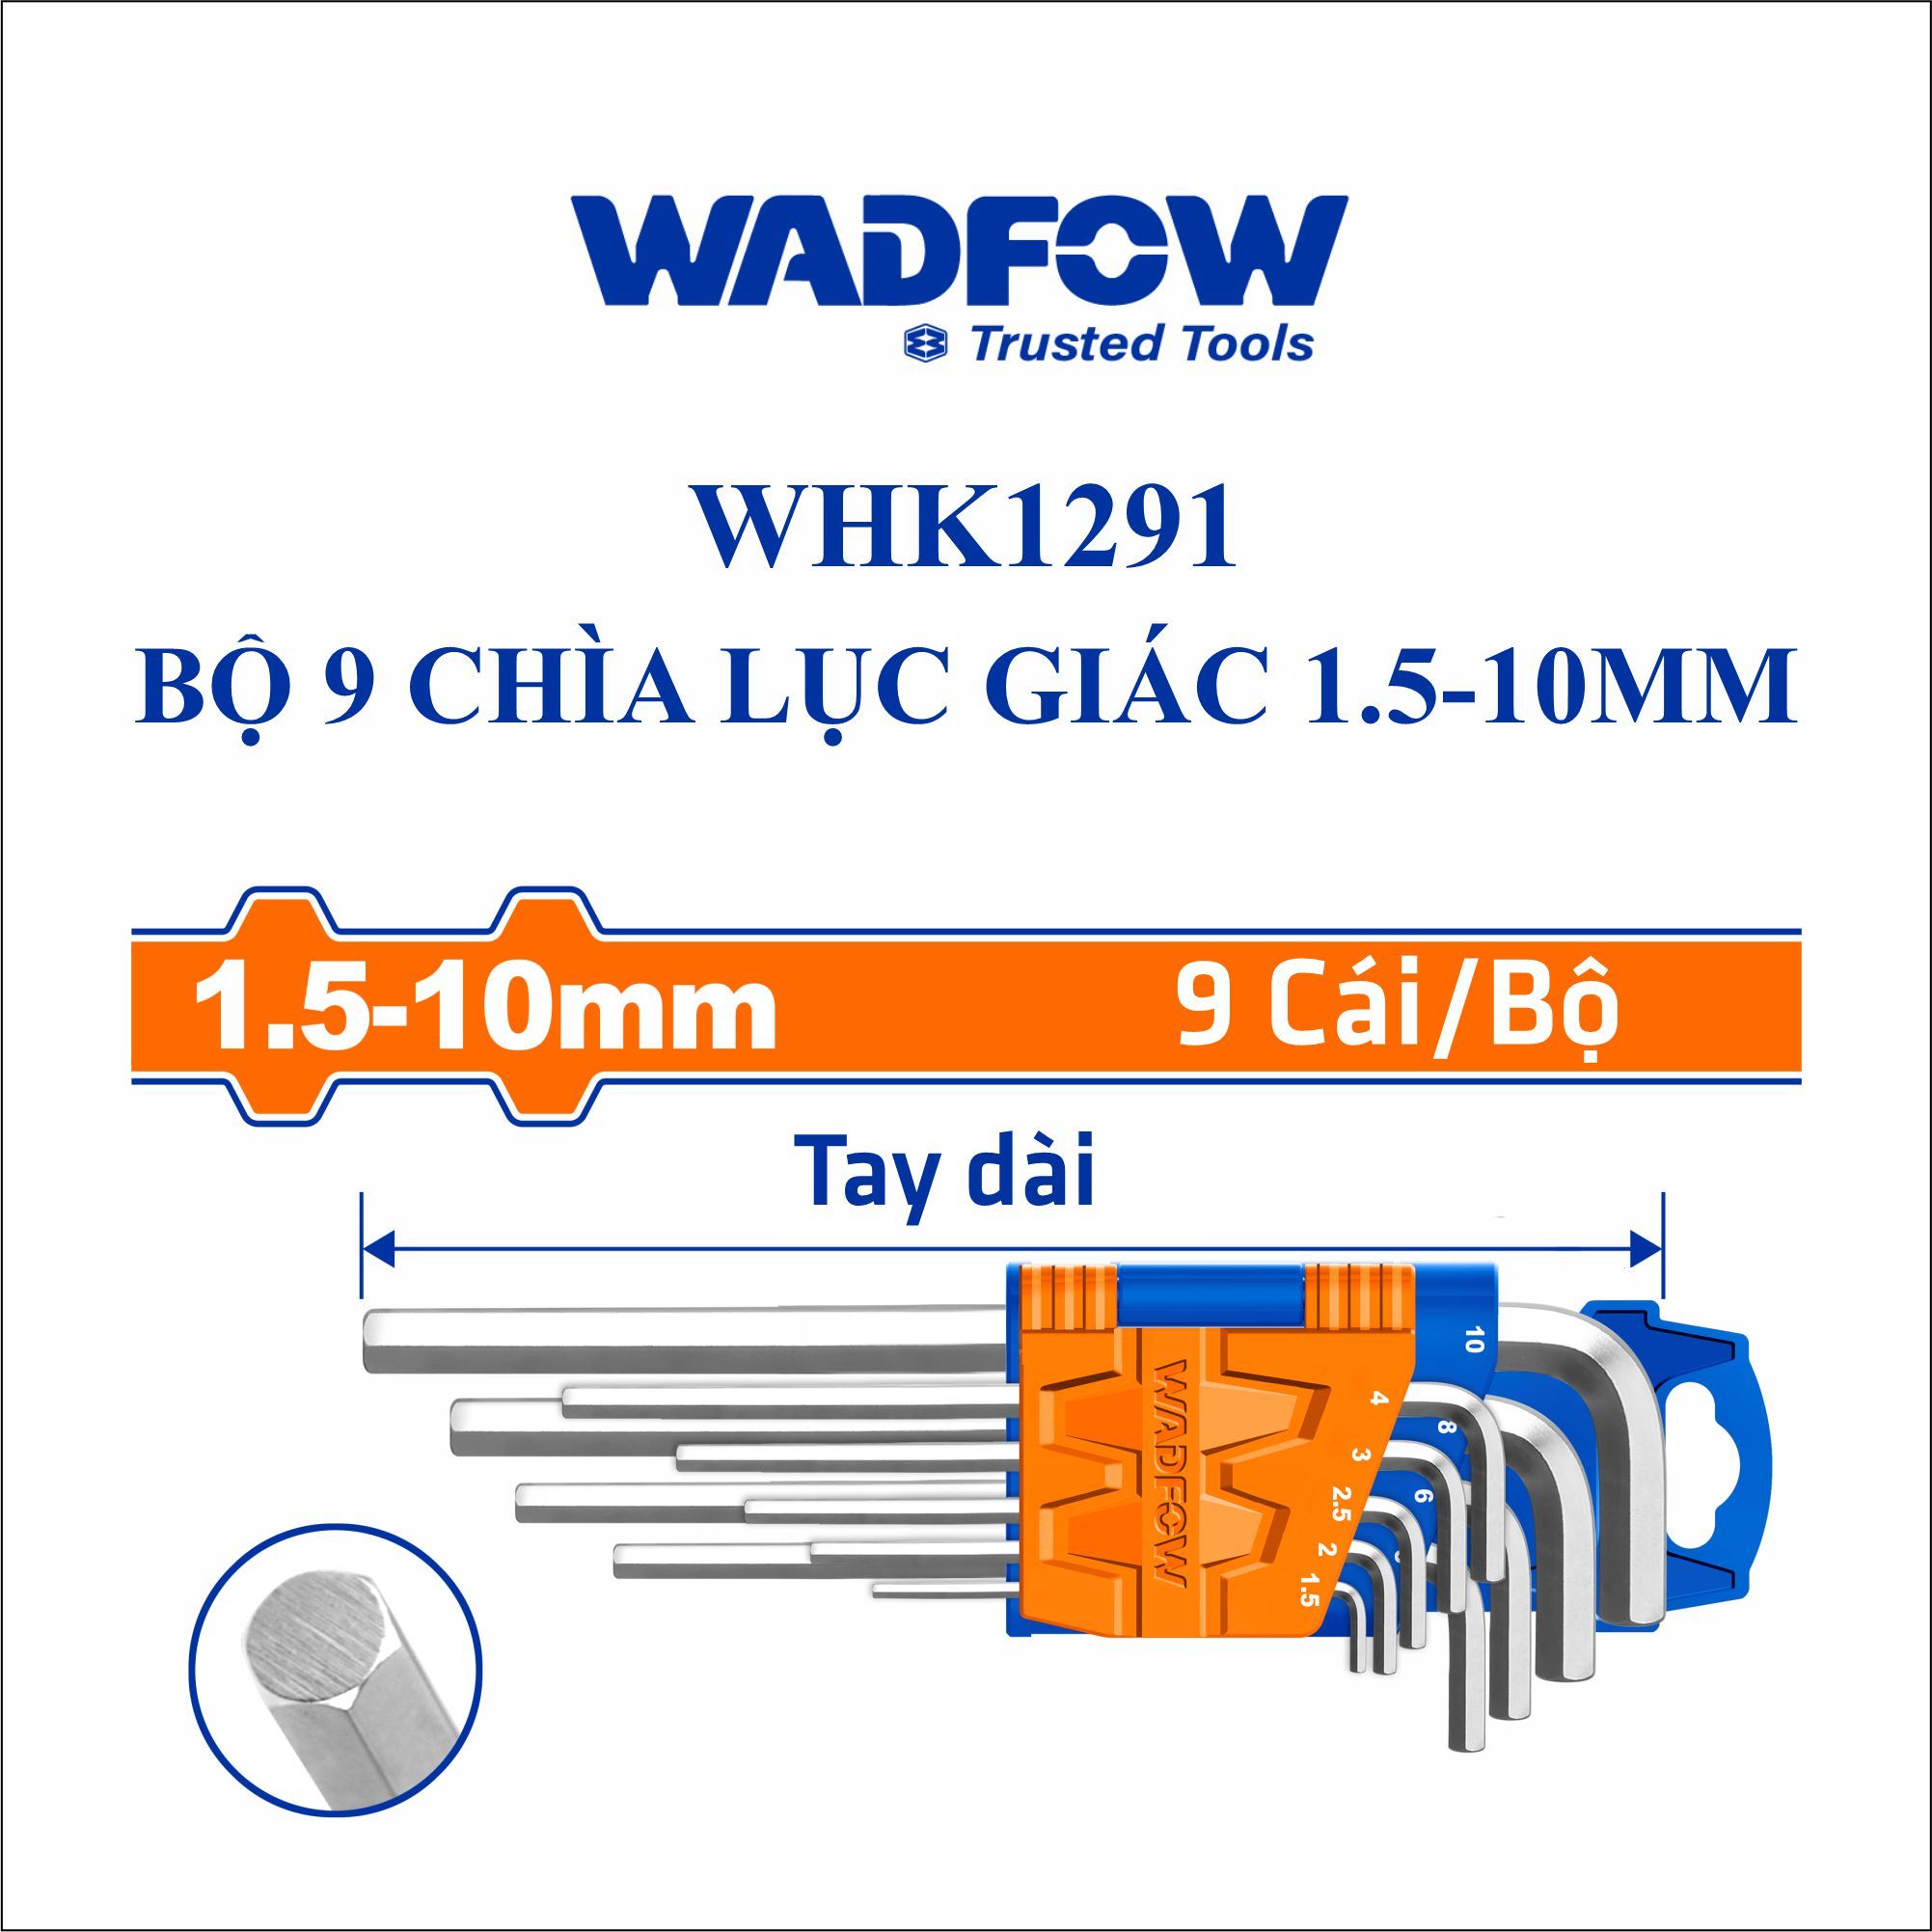  Bộ 9 chìa lục giác 1.5-10mm WADFOW WHK1291 